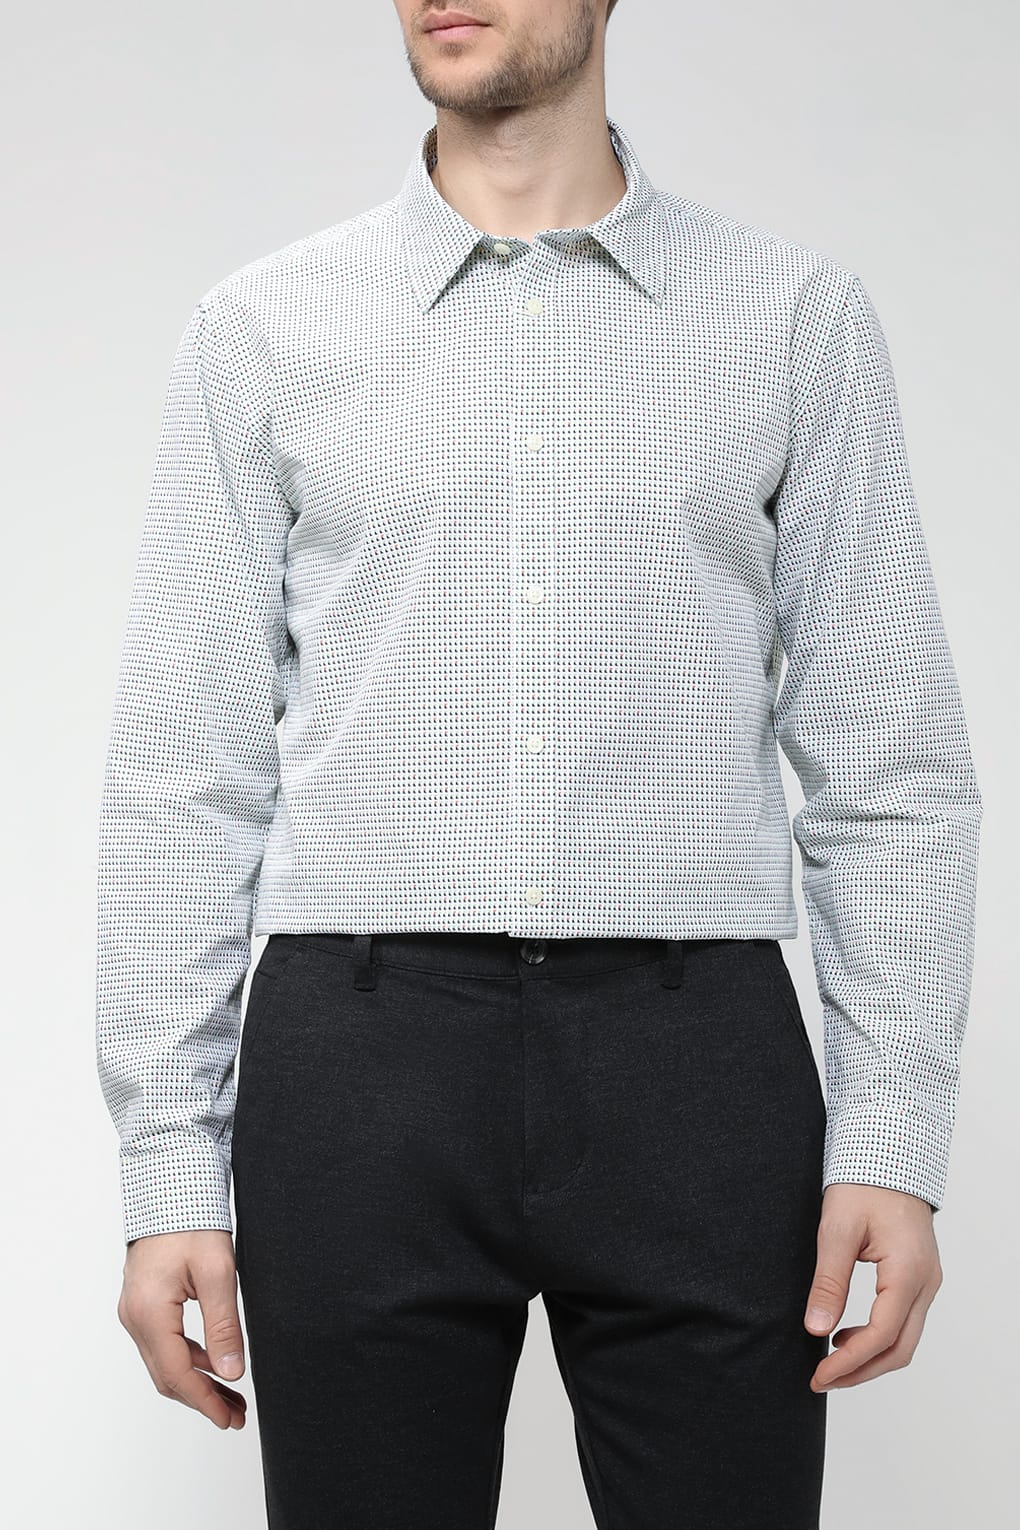 

Рубашка мужская Esprit Casual 013EE2F303 белая S, Белый, 013EE2F303